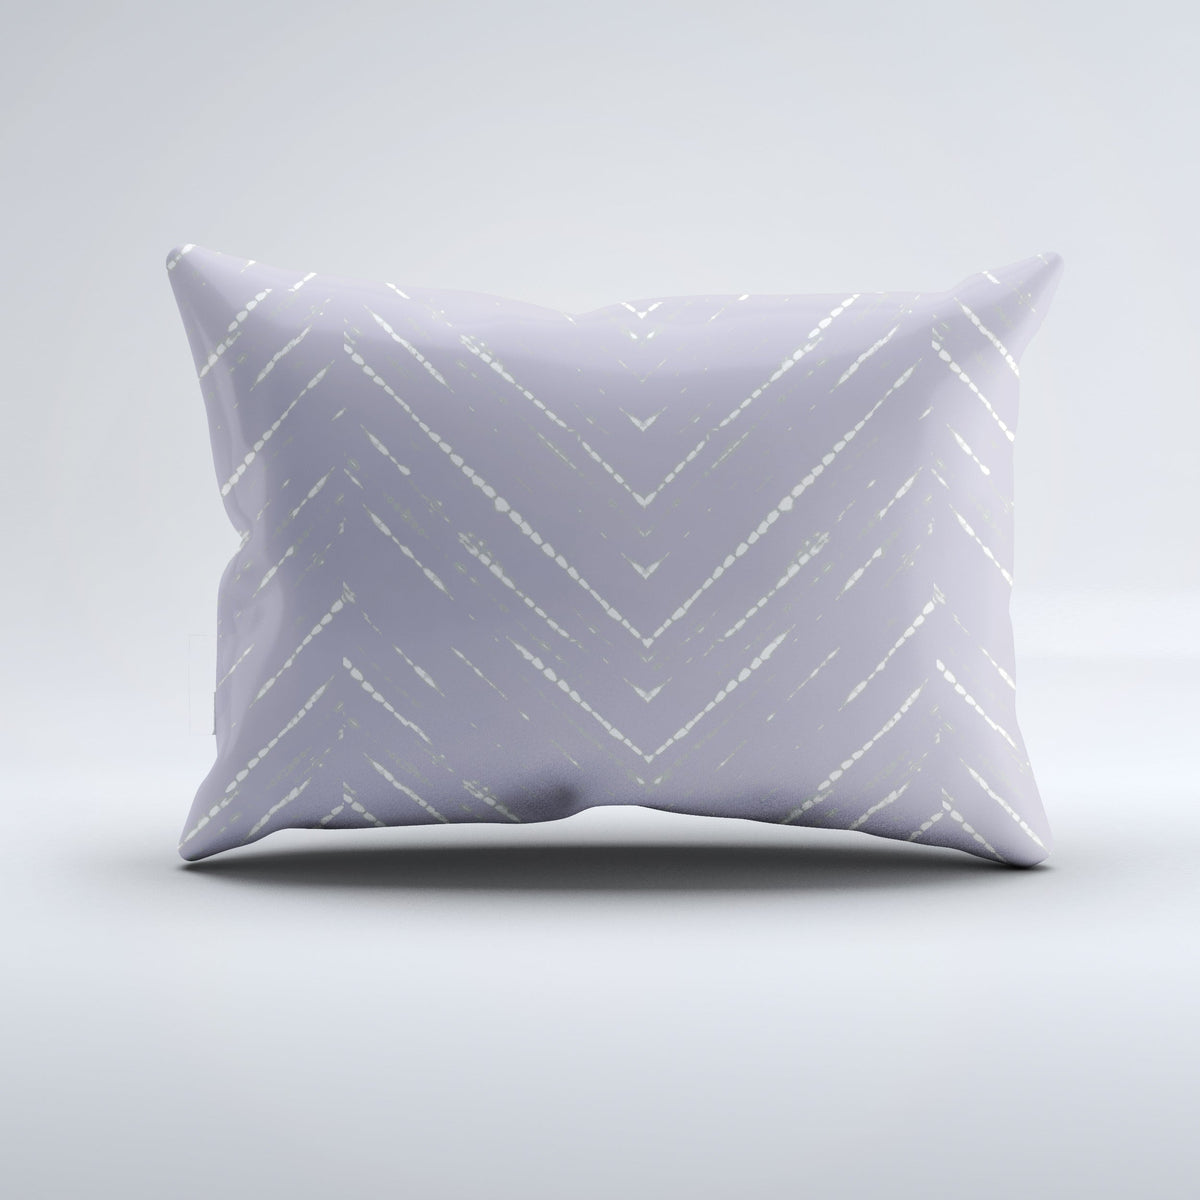 Bolster Pillow - Mariko Lavender Bedding, Pillows, Bolster Pillow MWW 